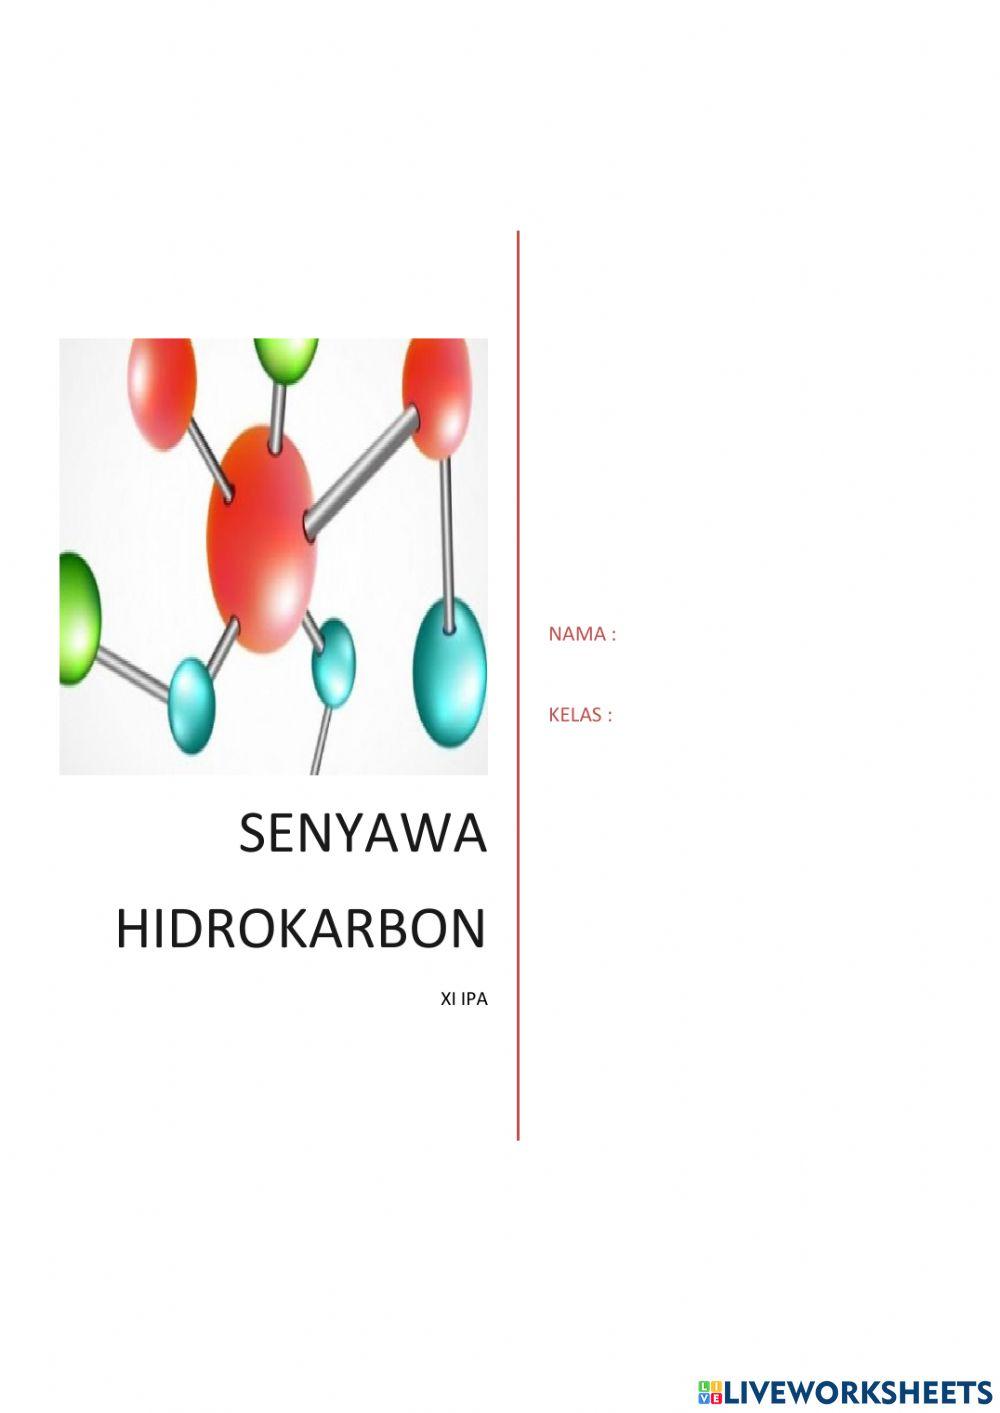 Senyawa hidrokarbo